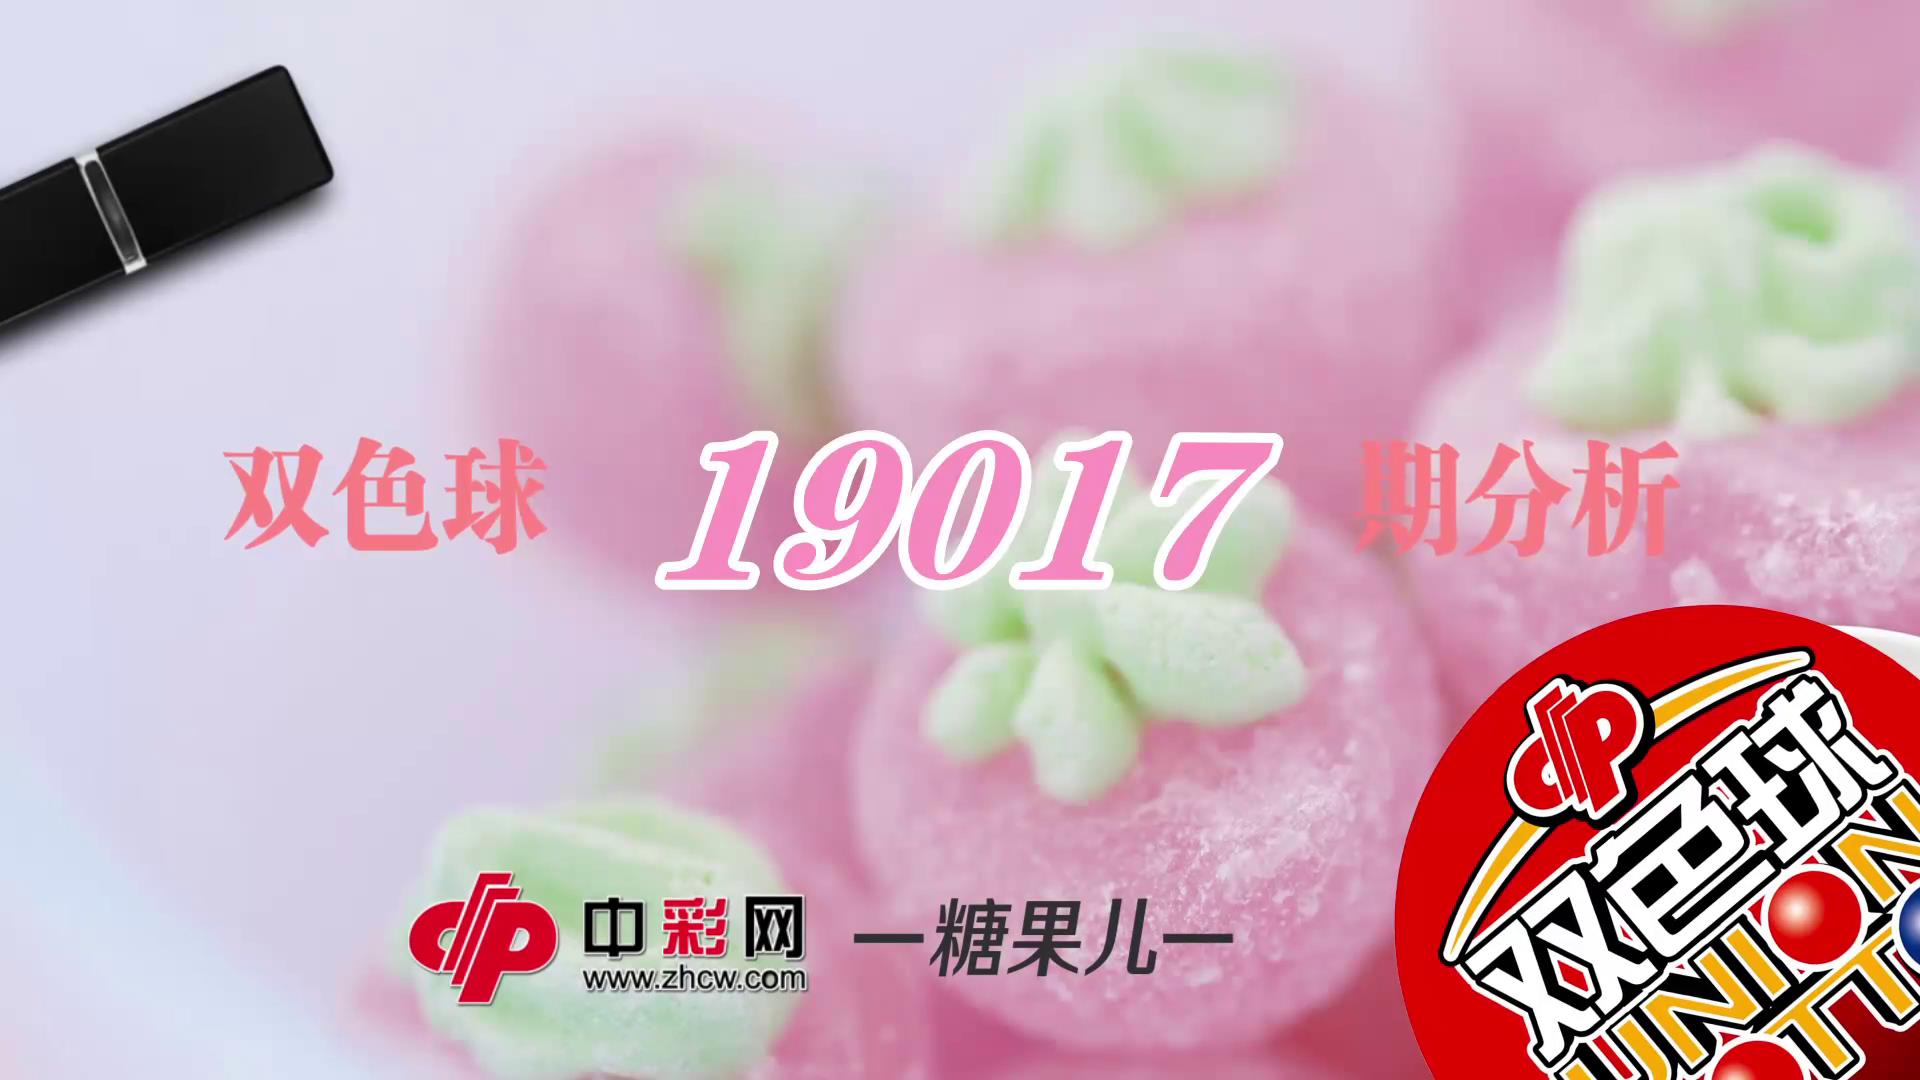 【中彩视频】糖果儿双色球第19017期